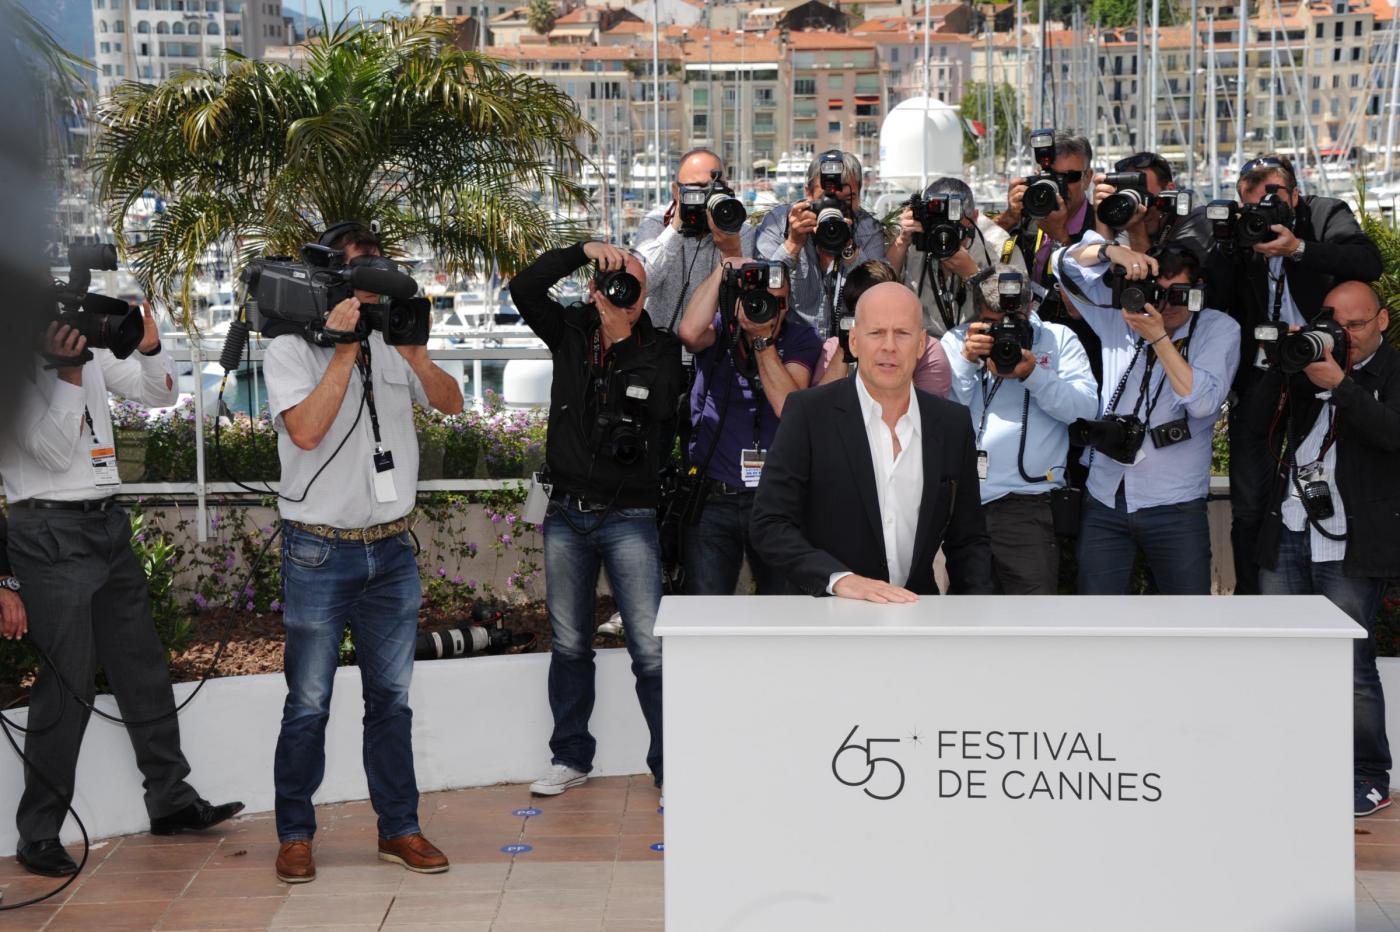 Festival del cinema di Cannes, photocall del film "Moonrise kingdom"09